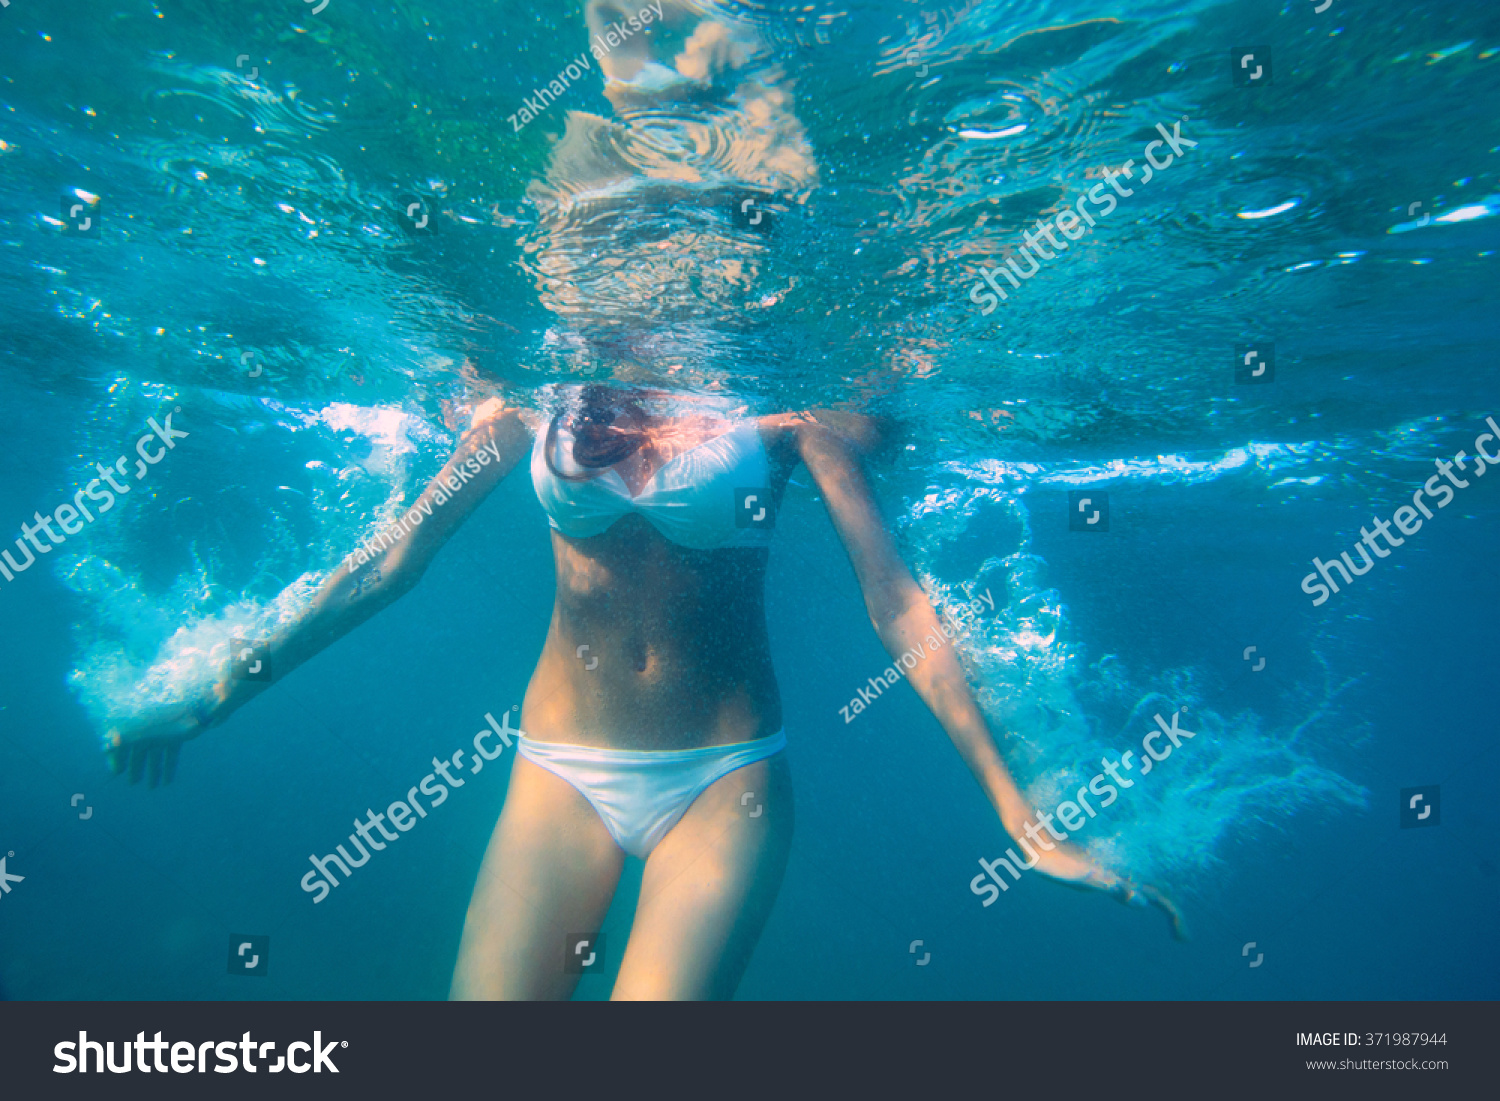 Снимай трусы купаться. Девушка в купальнике в воде. Девушка под водой. Женщина в купальнике под водой. Под водой без купальника.